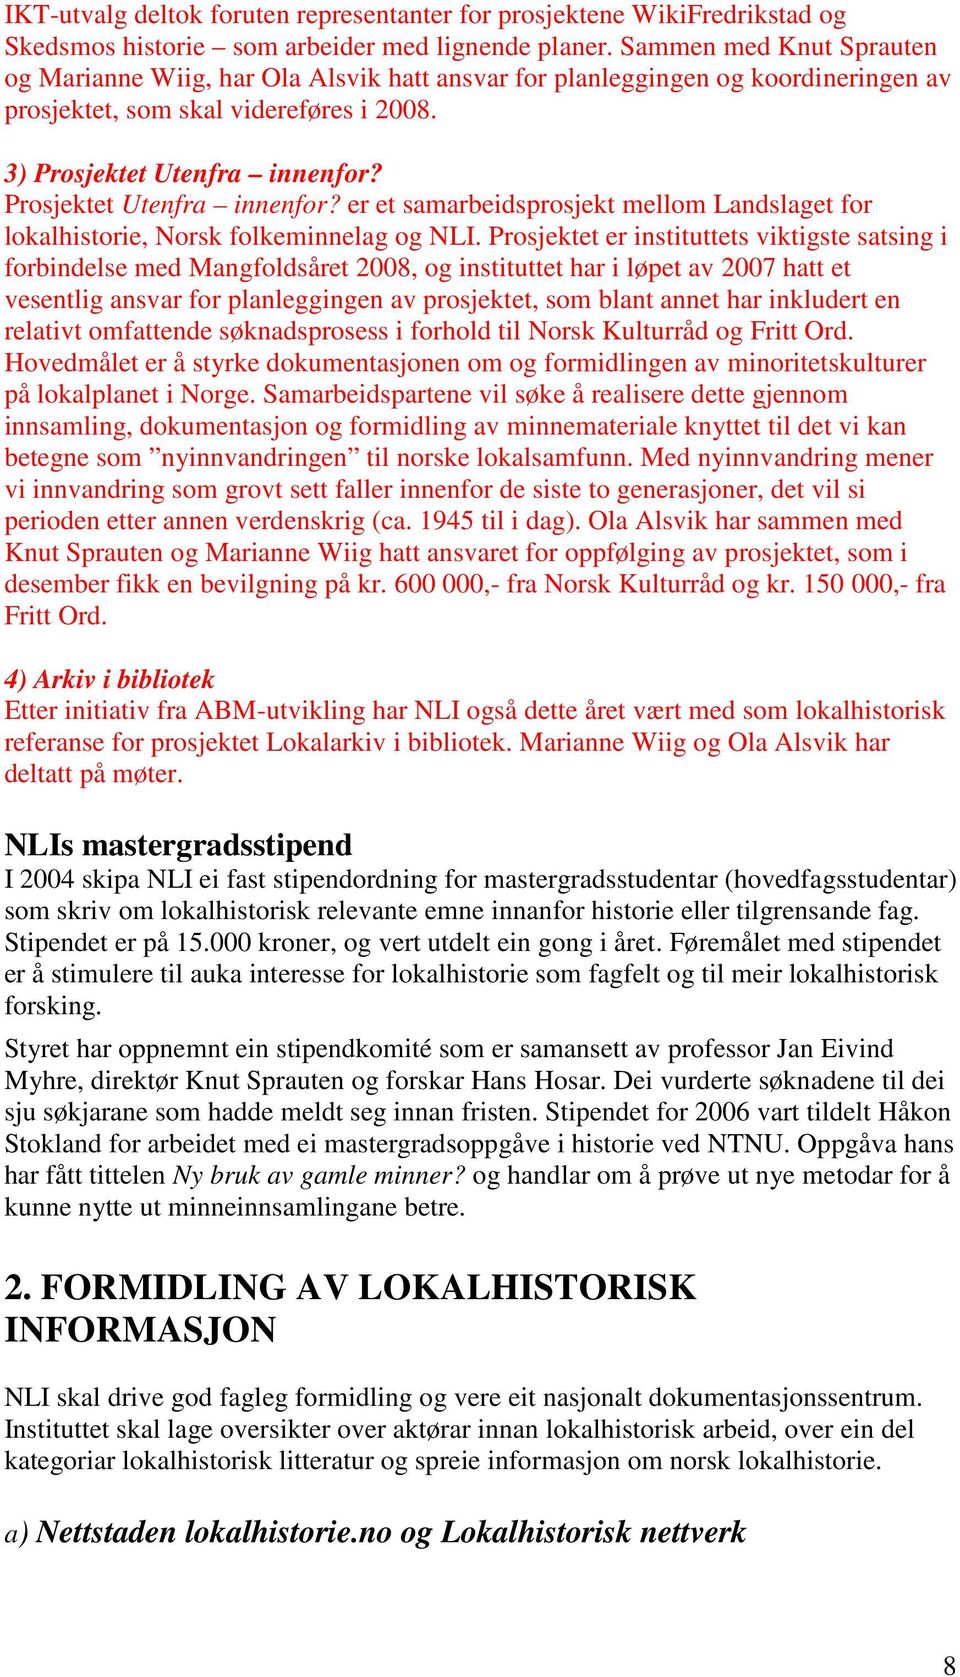 Prosjektet Utenfra innenfor? er et samarbeidsprosjekt mellom Landslaget for lokalhistorie, Norsk folkeminnelag og NLI.